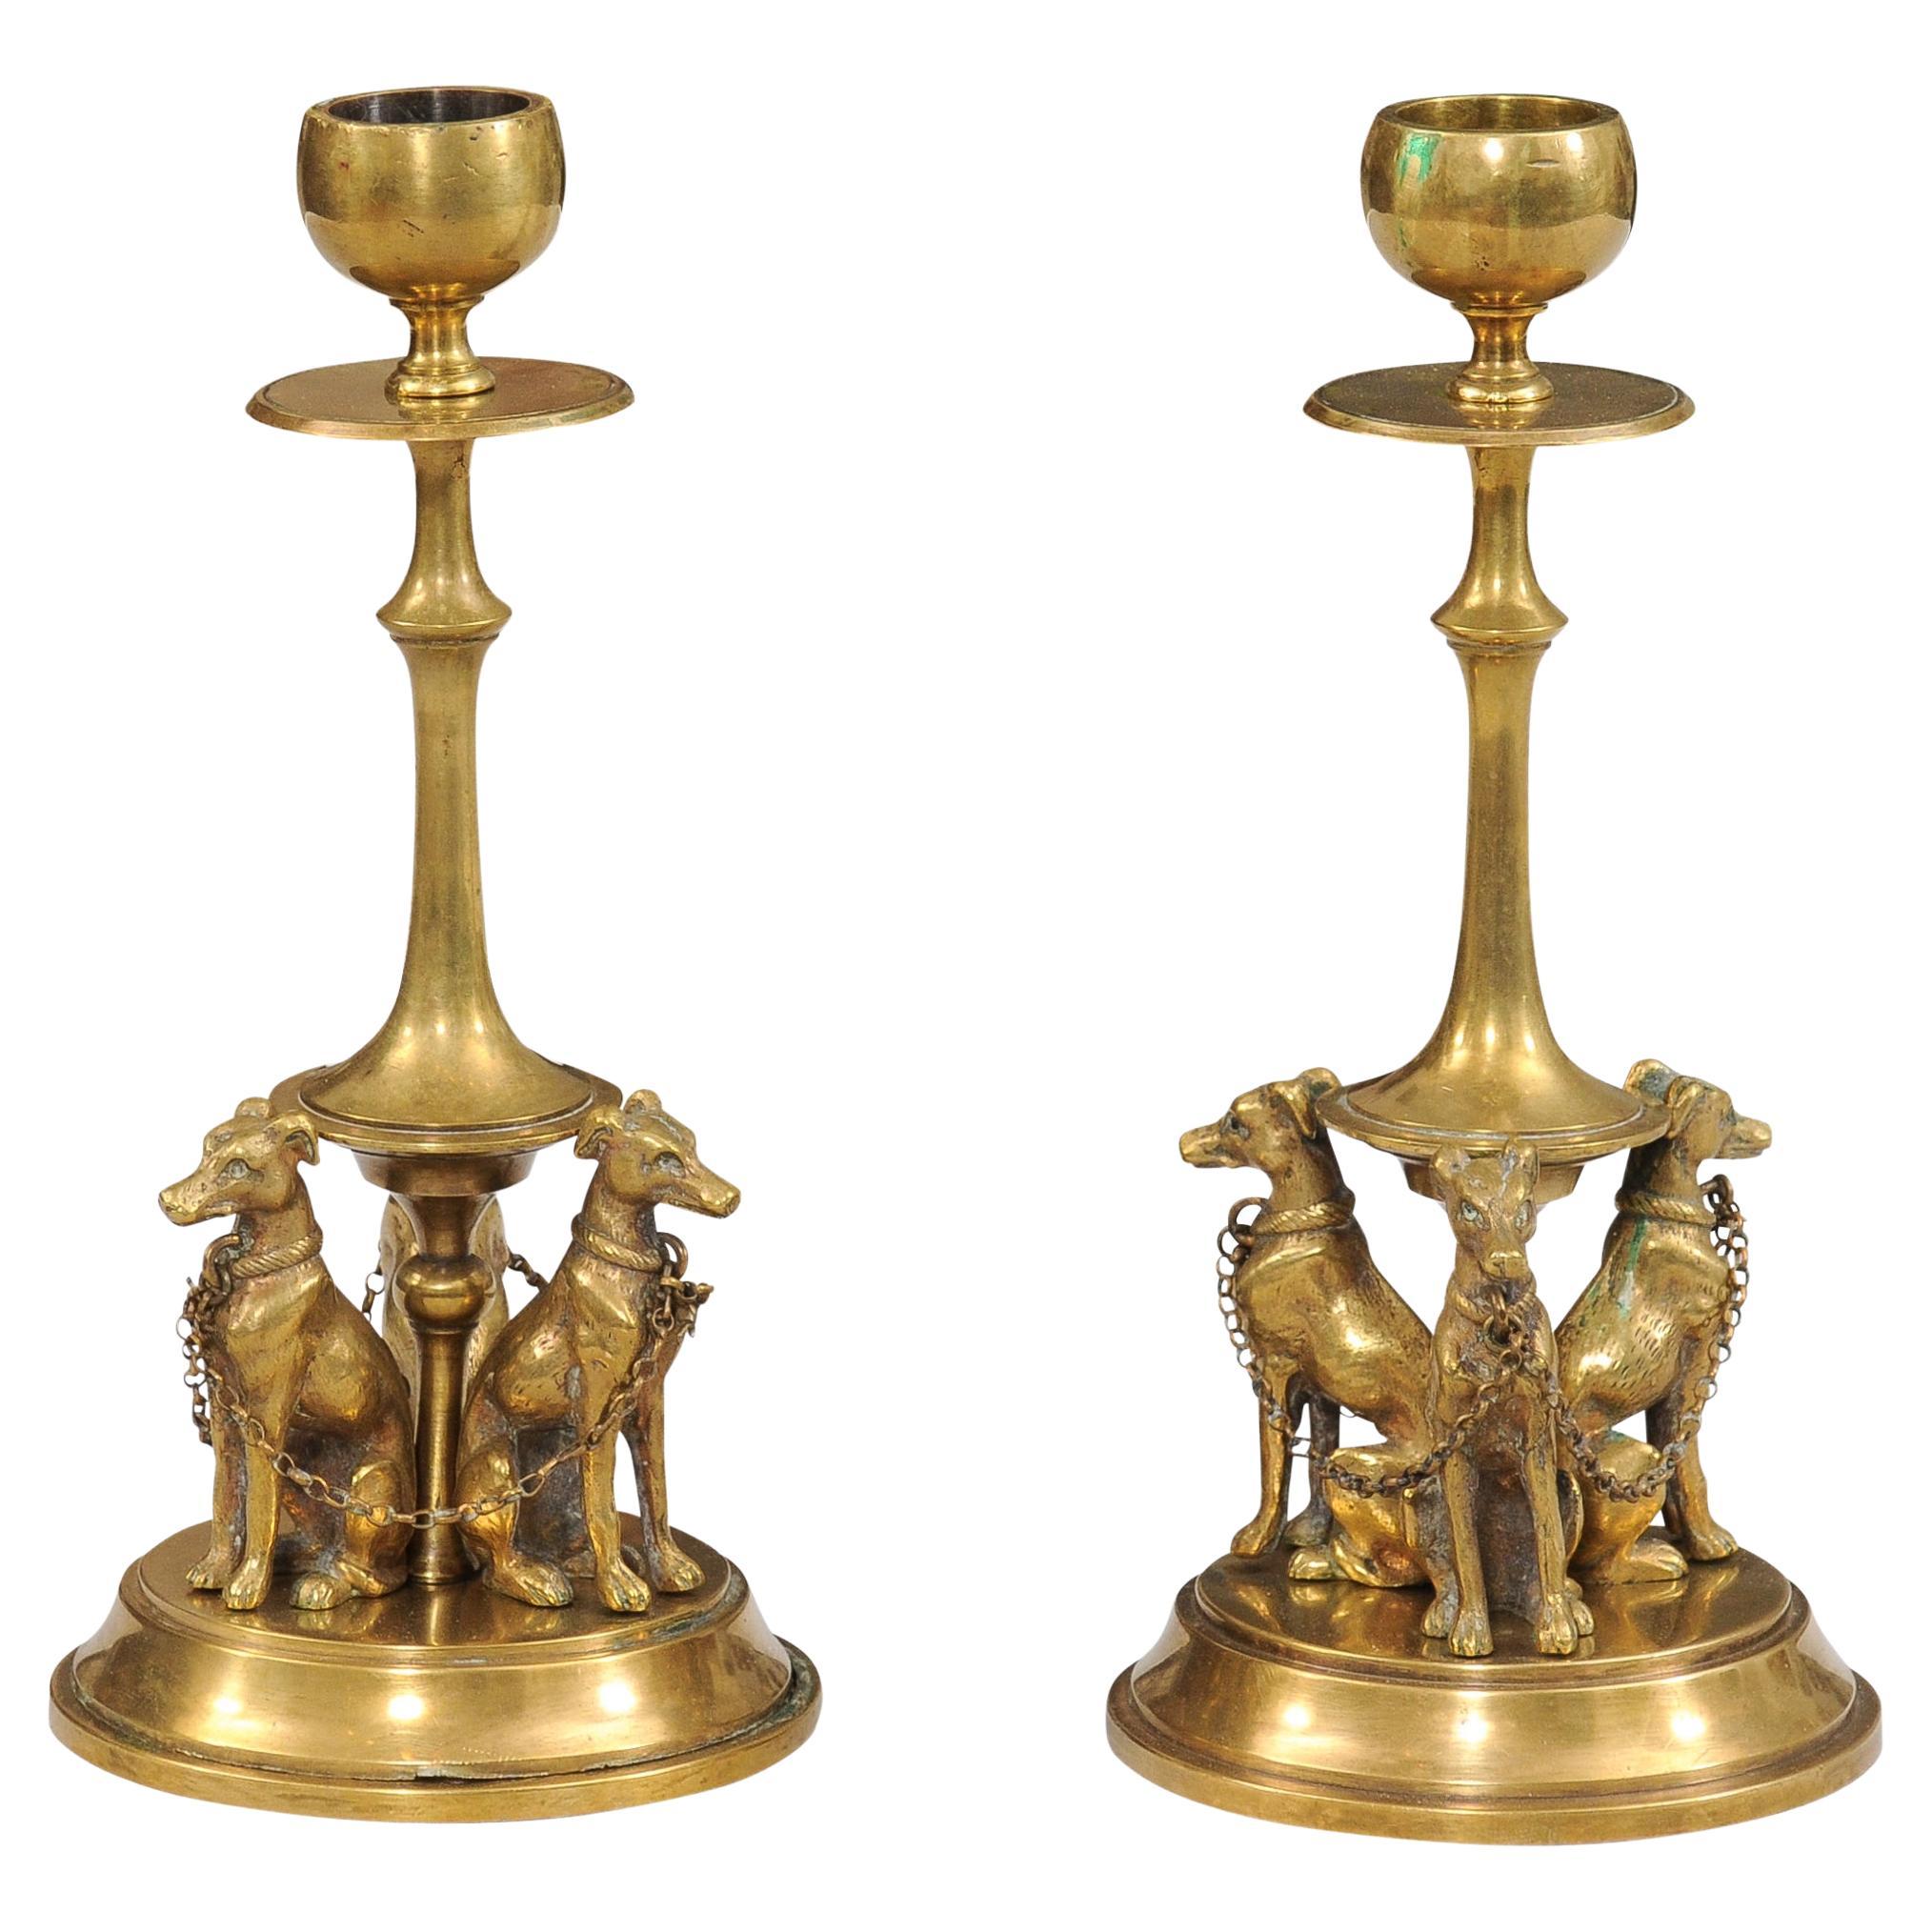 Paar französische Bronze-Kerzenständer aus dem 19. Jahrhundert, dekoriert mit Windhunden